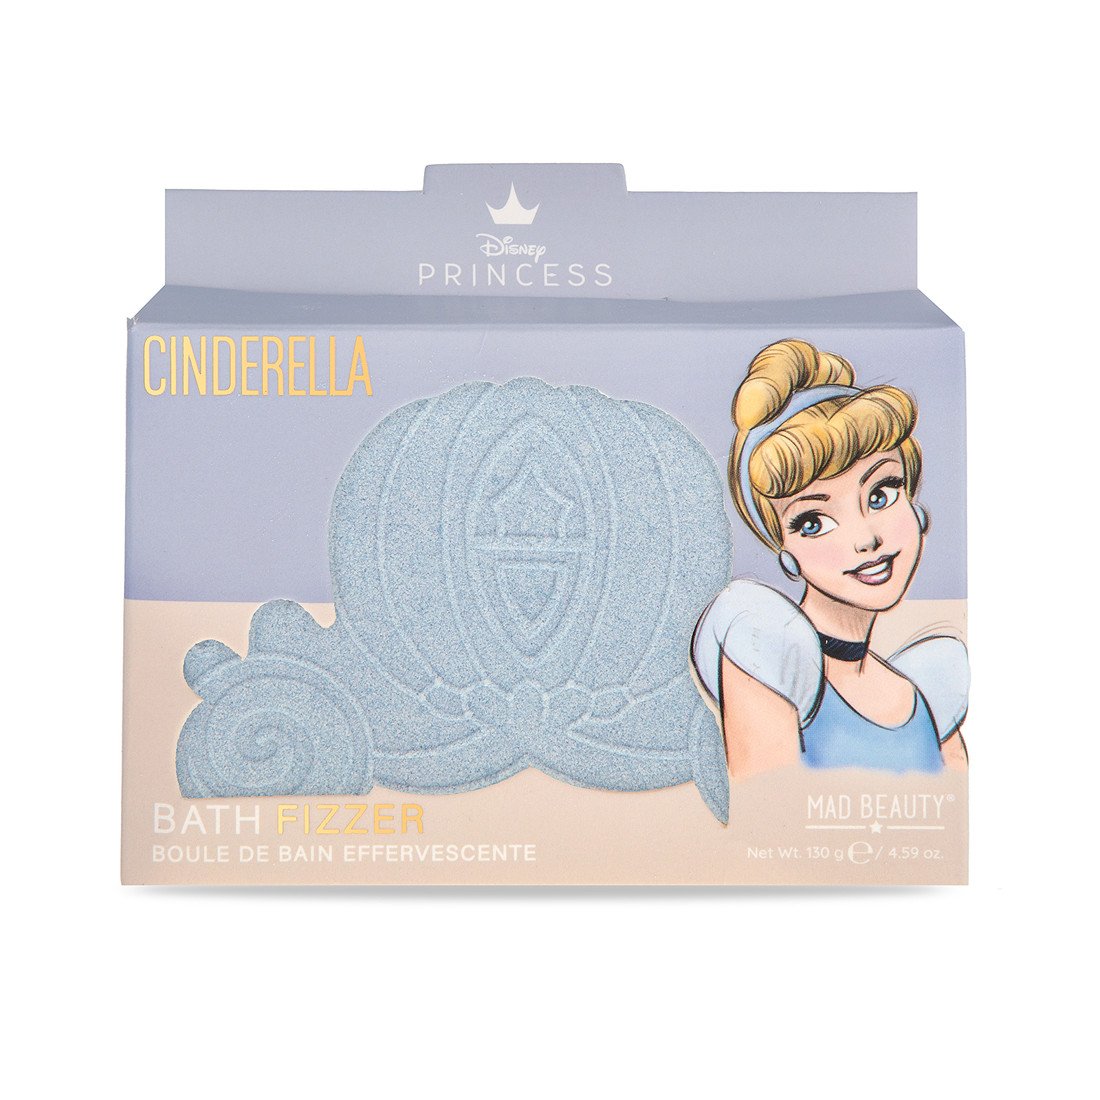 Mad Beauty Šumivá bomba do koupele Princess Cinderella (Bath Fizzer) 130 g